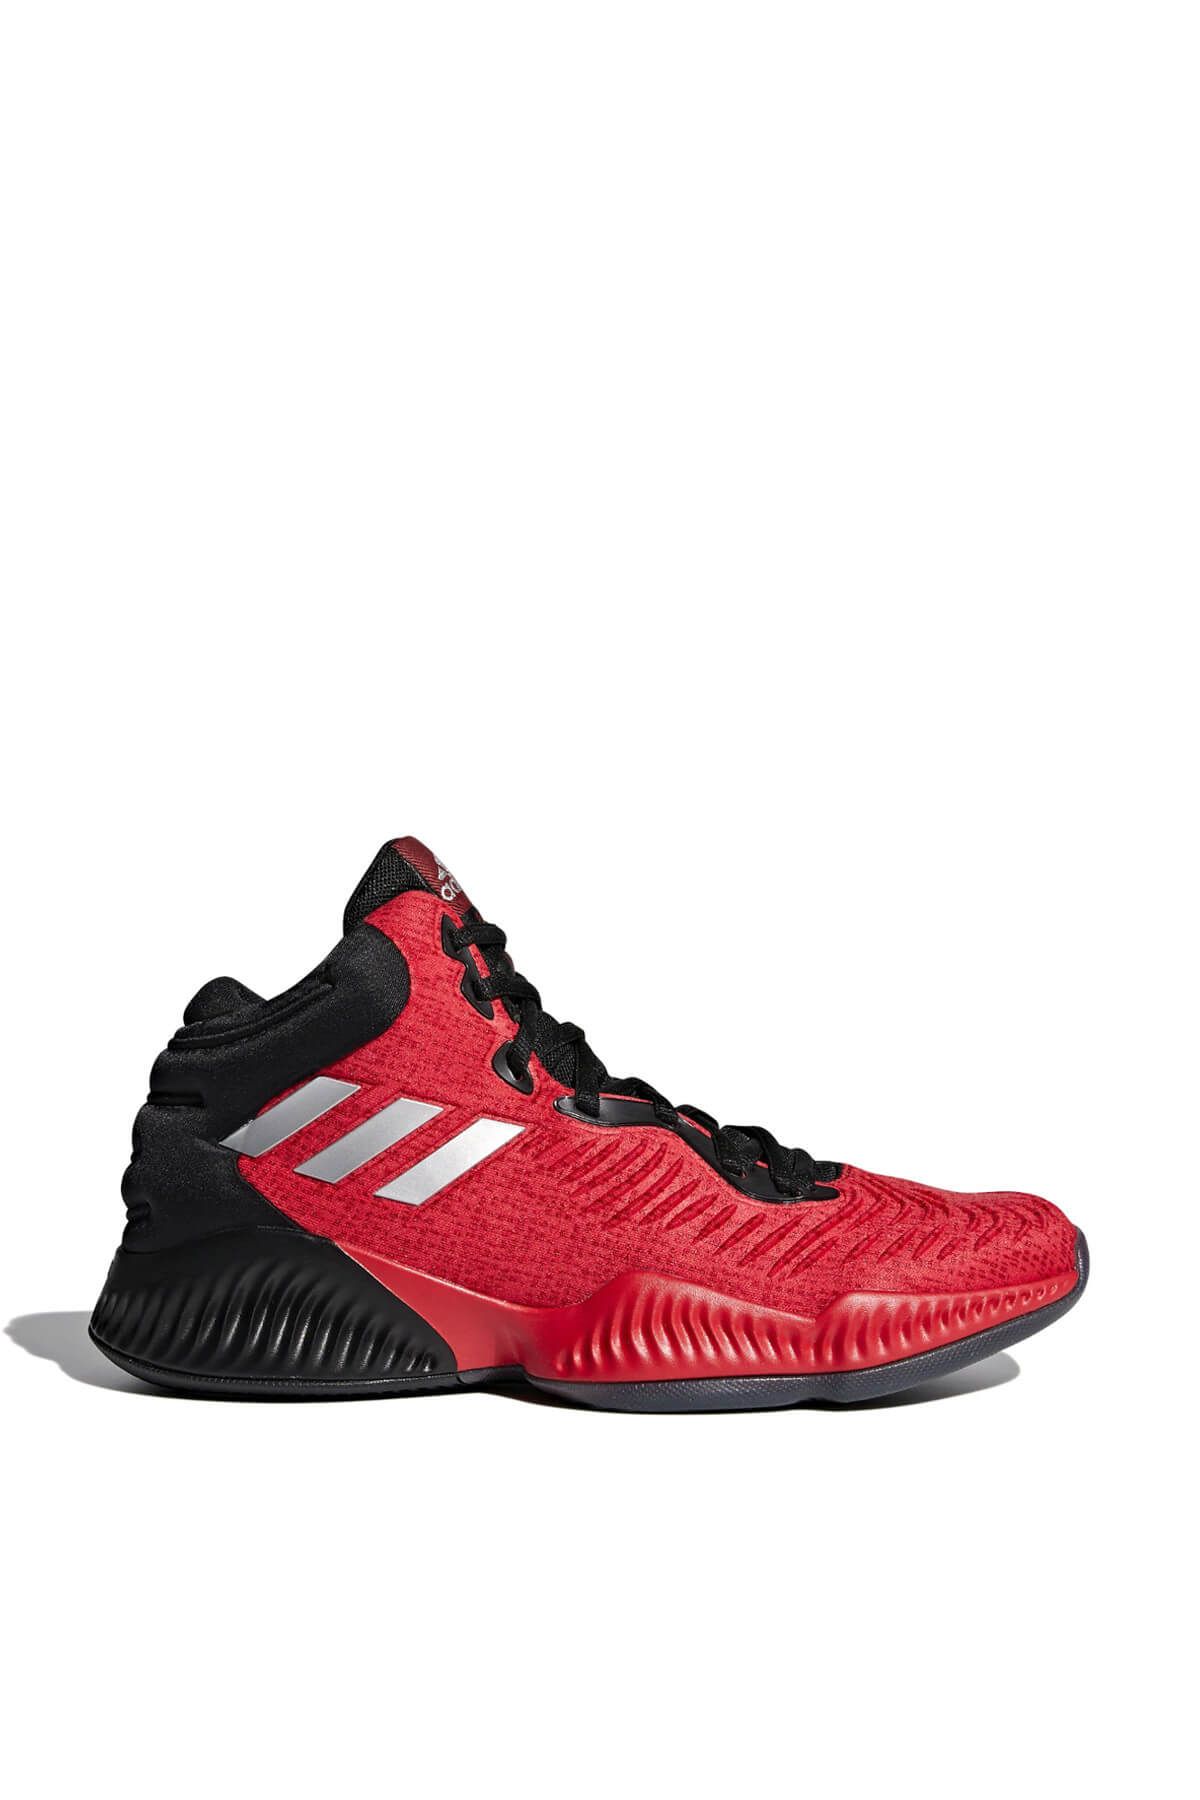 adidas Erkek Basketbol Ayakkabısı - Mad Bounce 2018 - AH2693